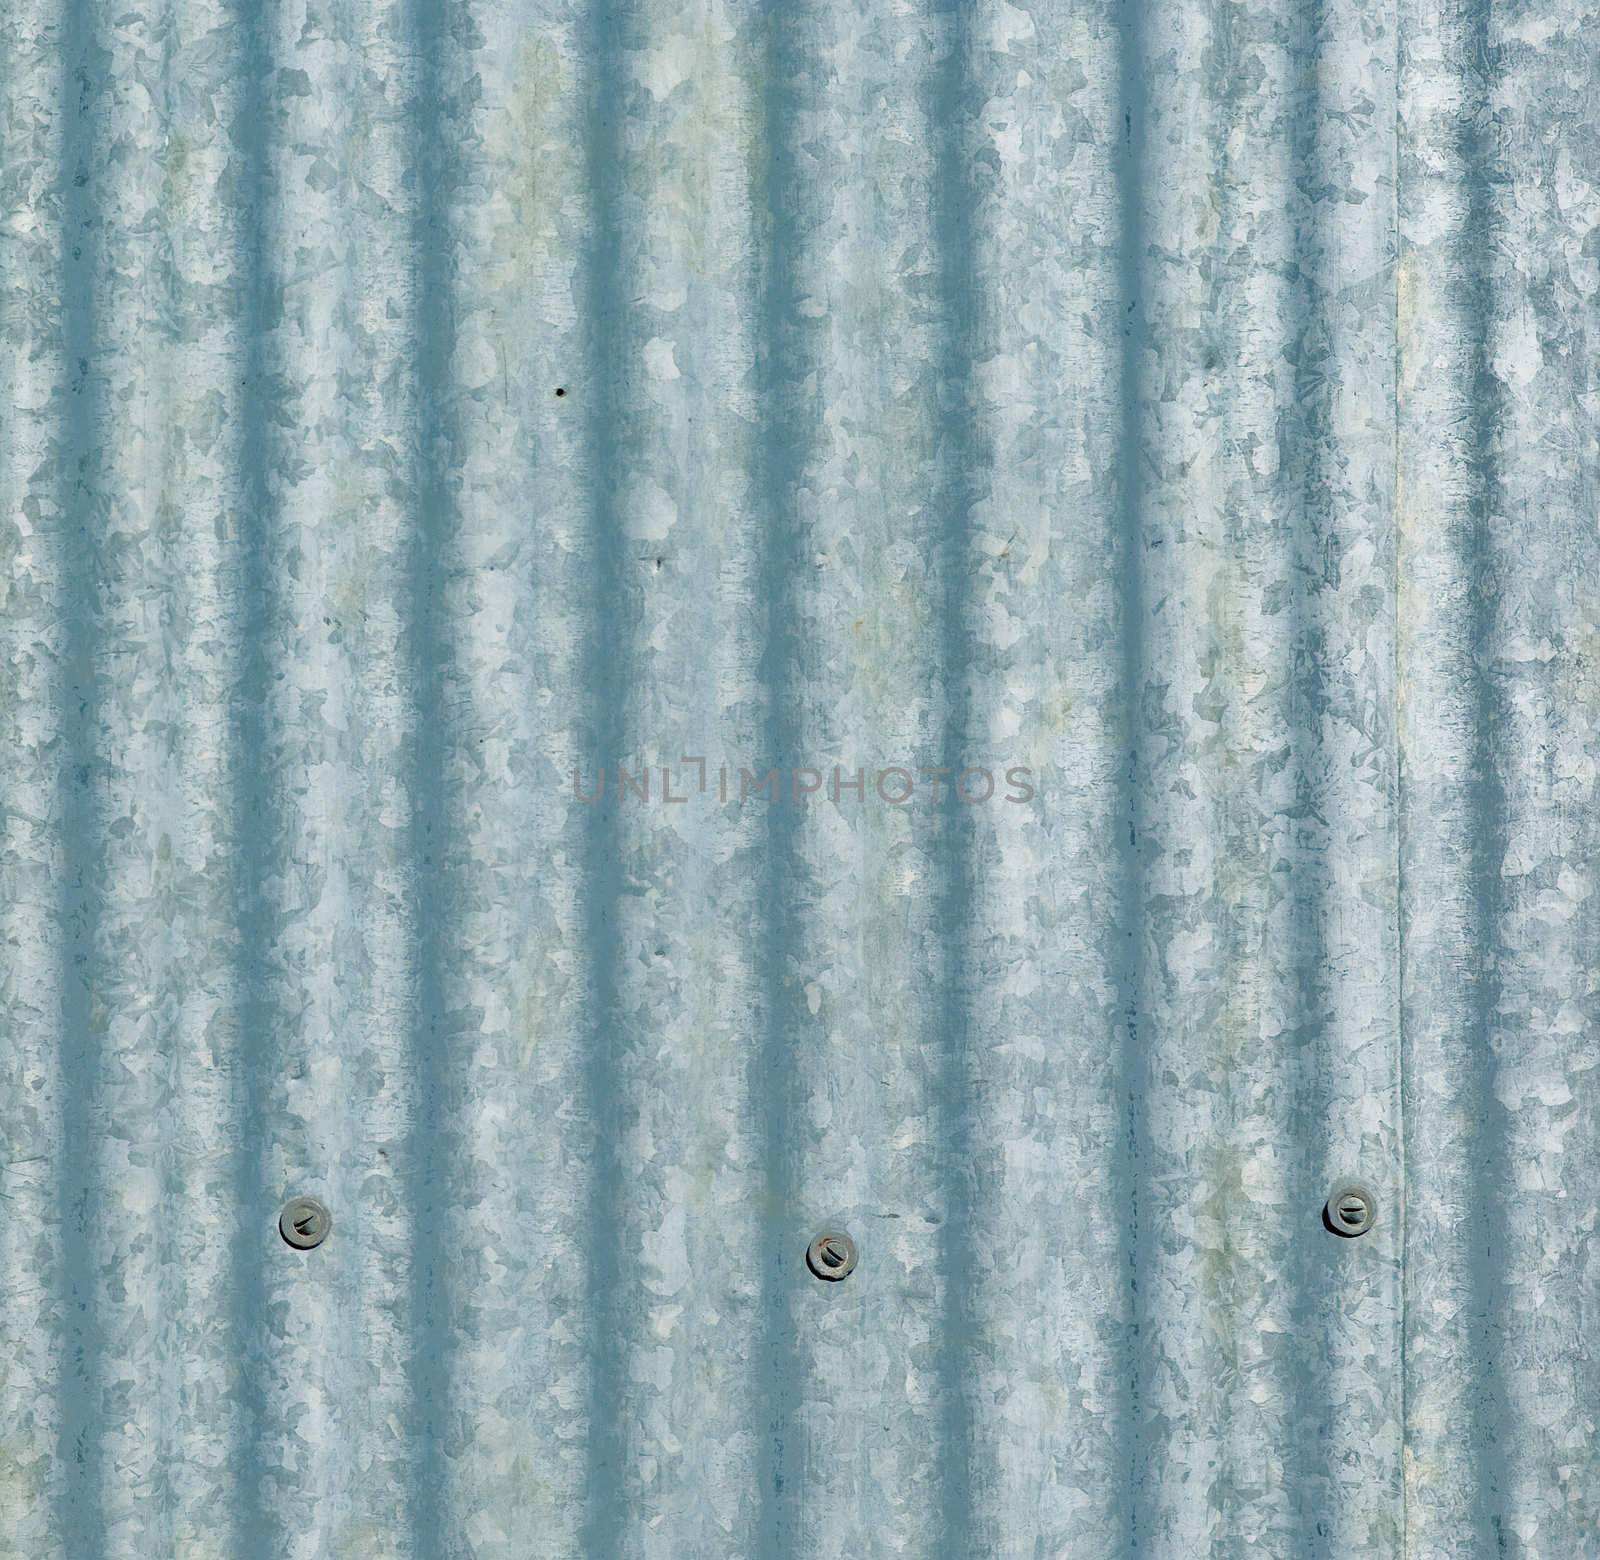 large sheet of galvanised or corrugated iron